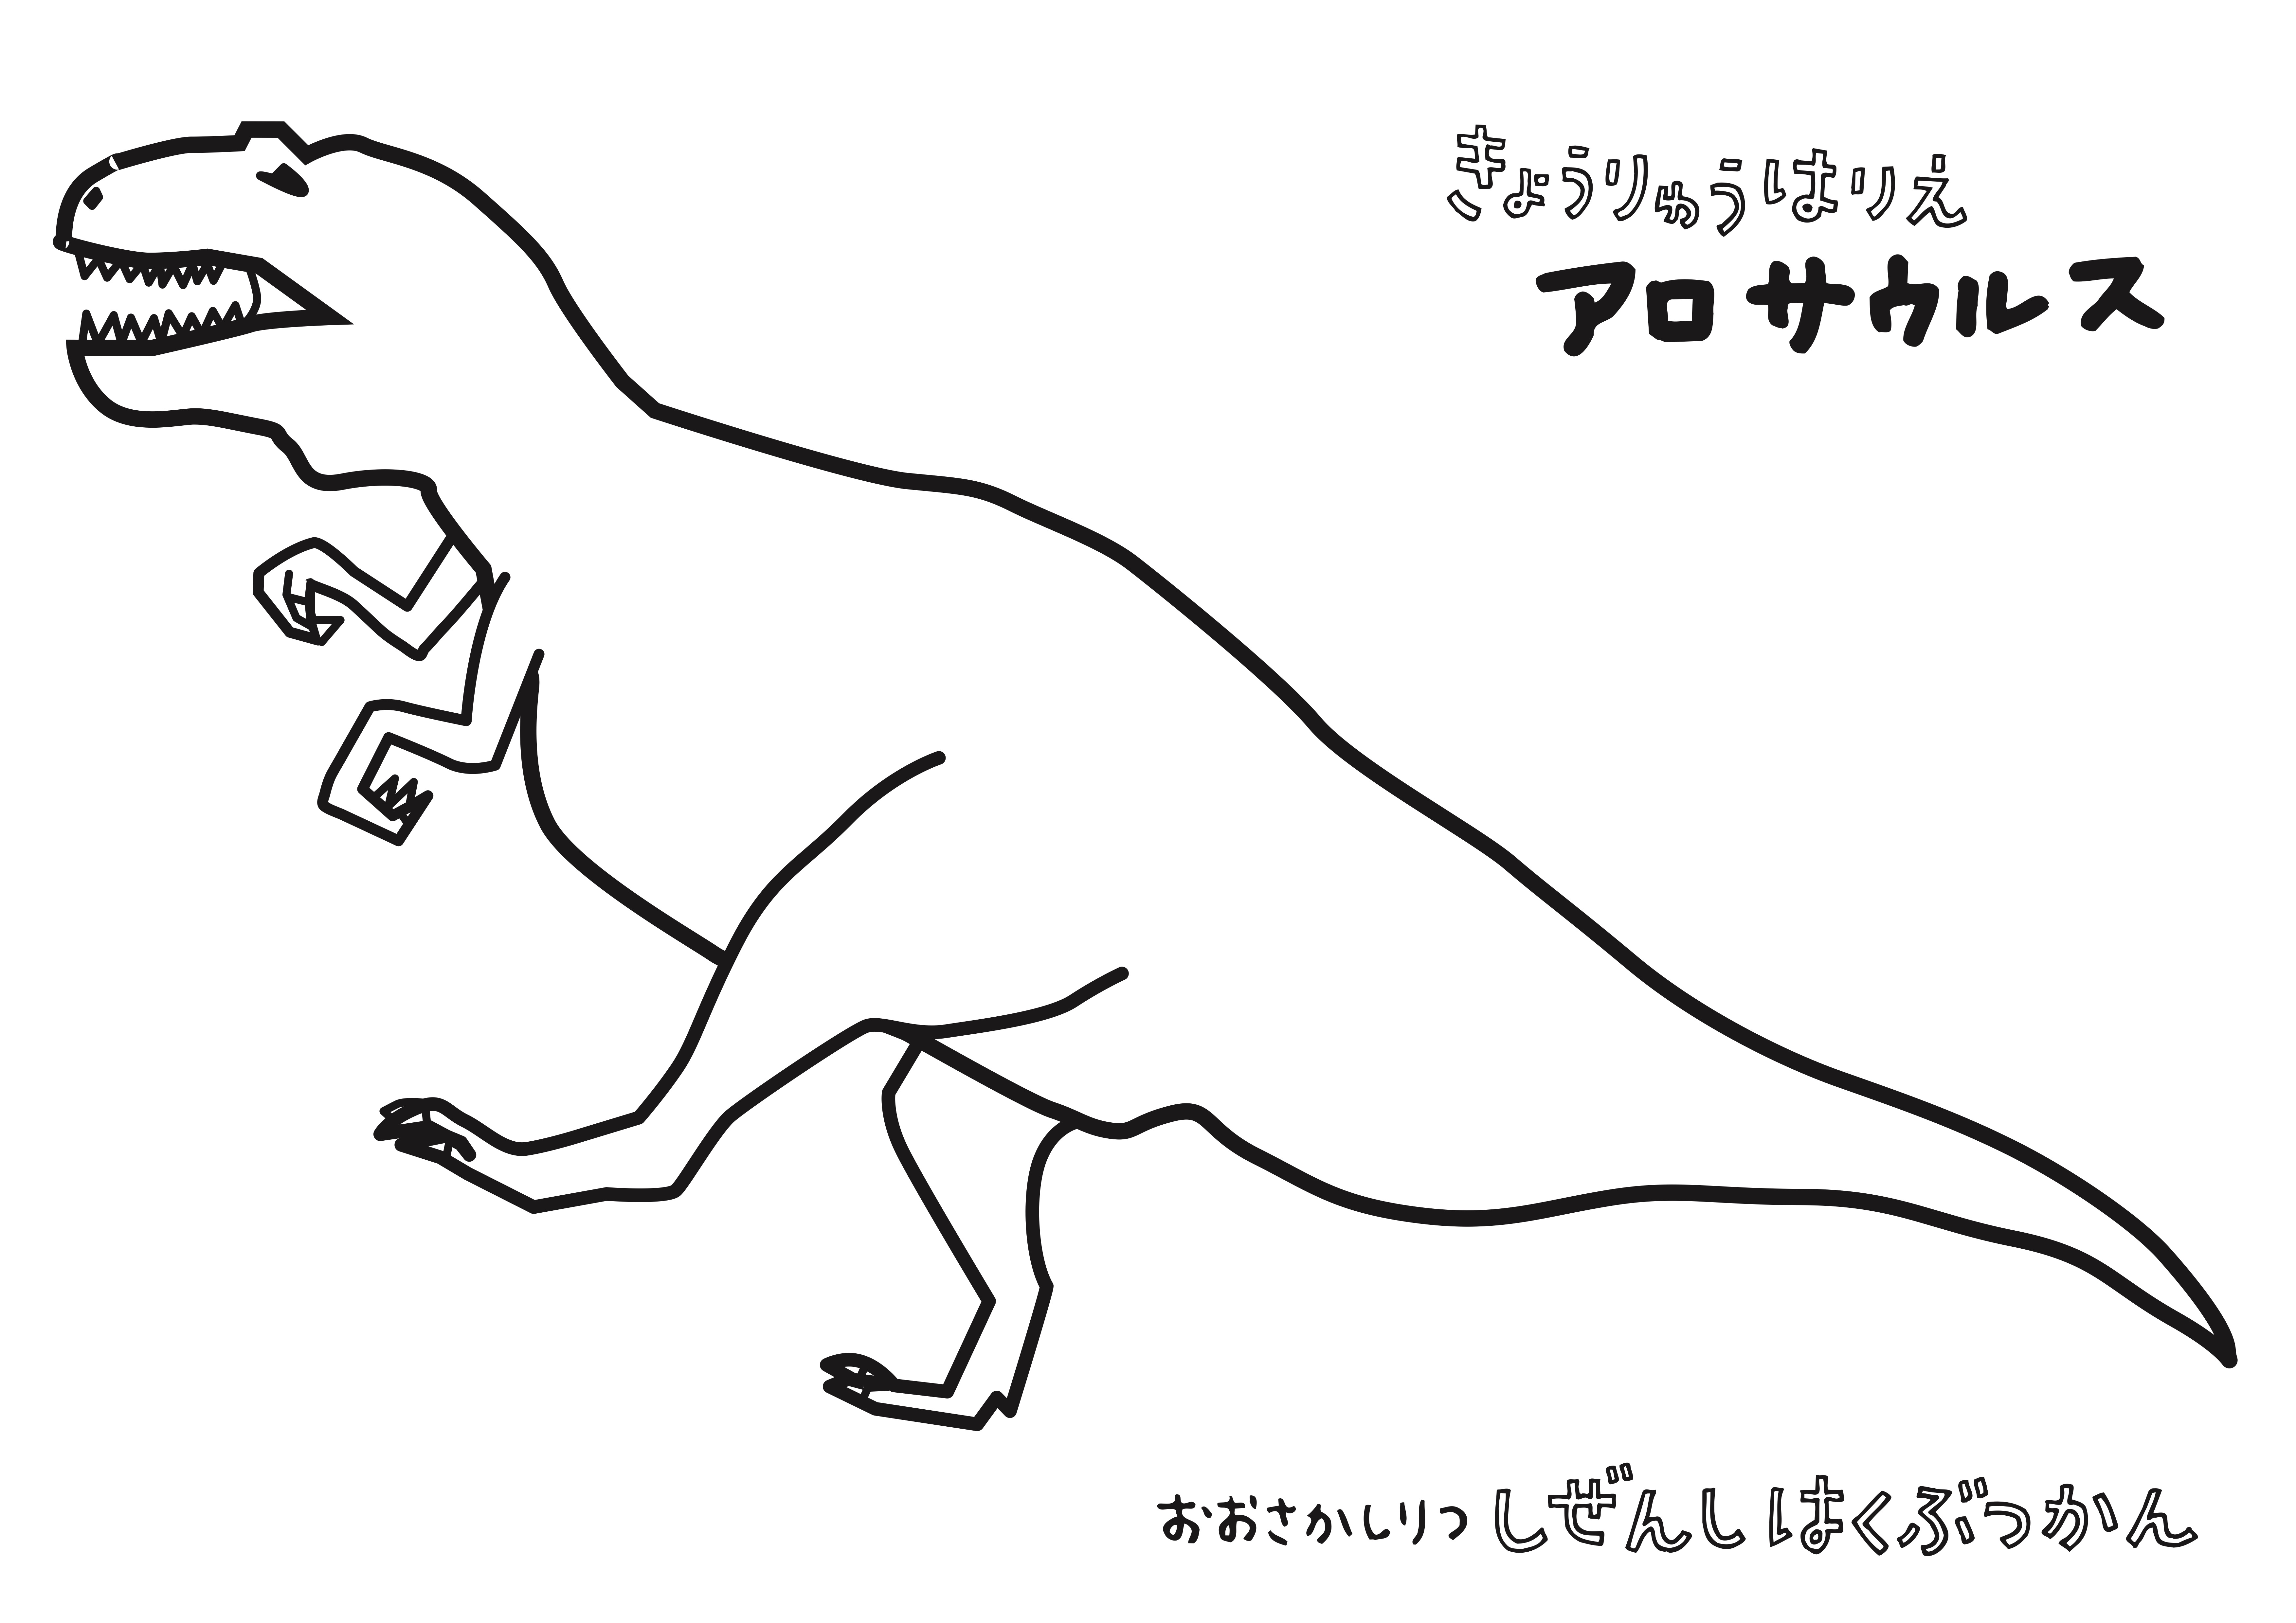 アロサウルス.jpg